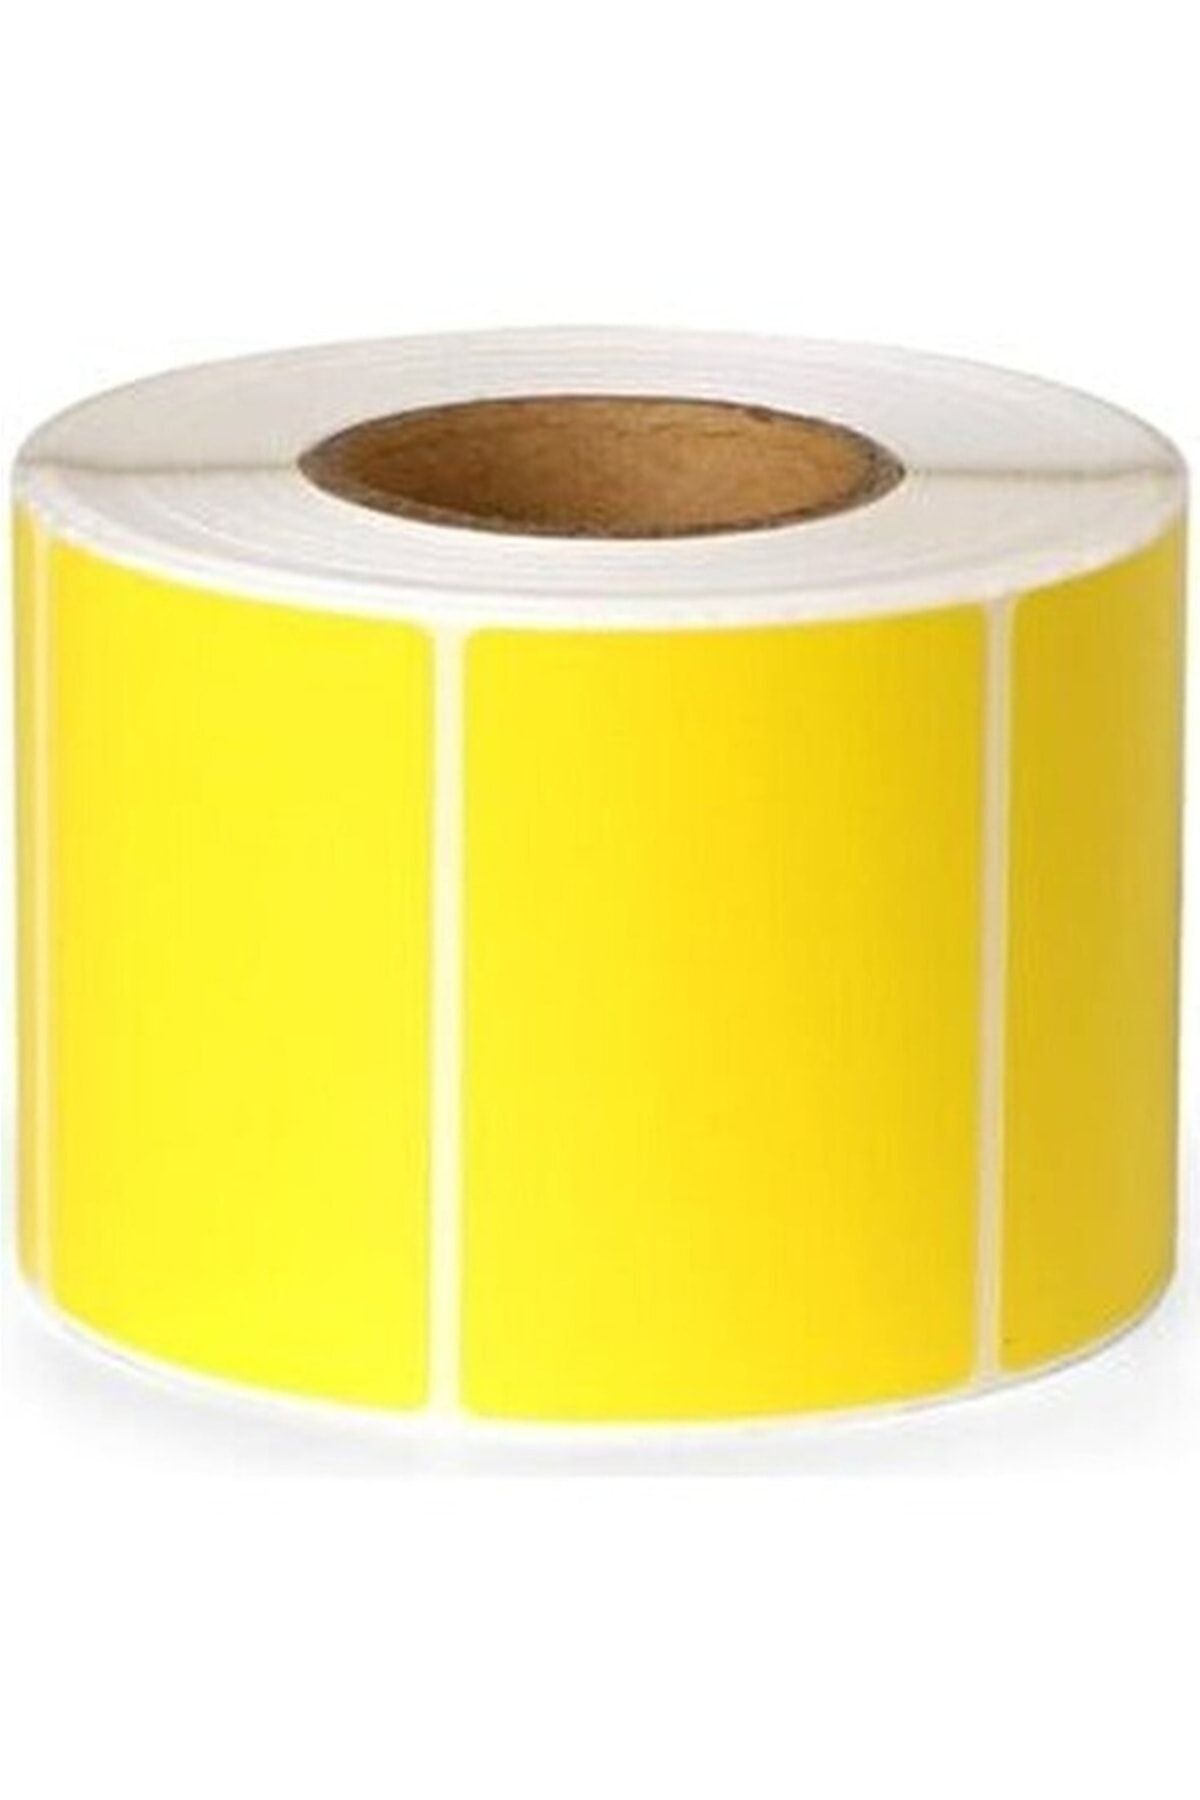 KARTALLAR ETİKET Sarı Renk Eczane Ilaç Tarif Barkod Etiketi 40x60mm 1 Rulo 500 Adet